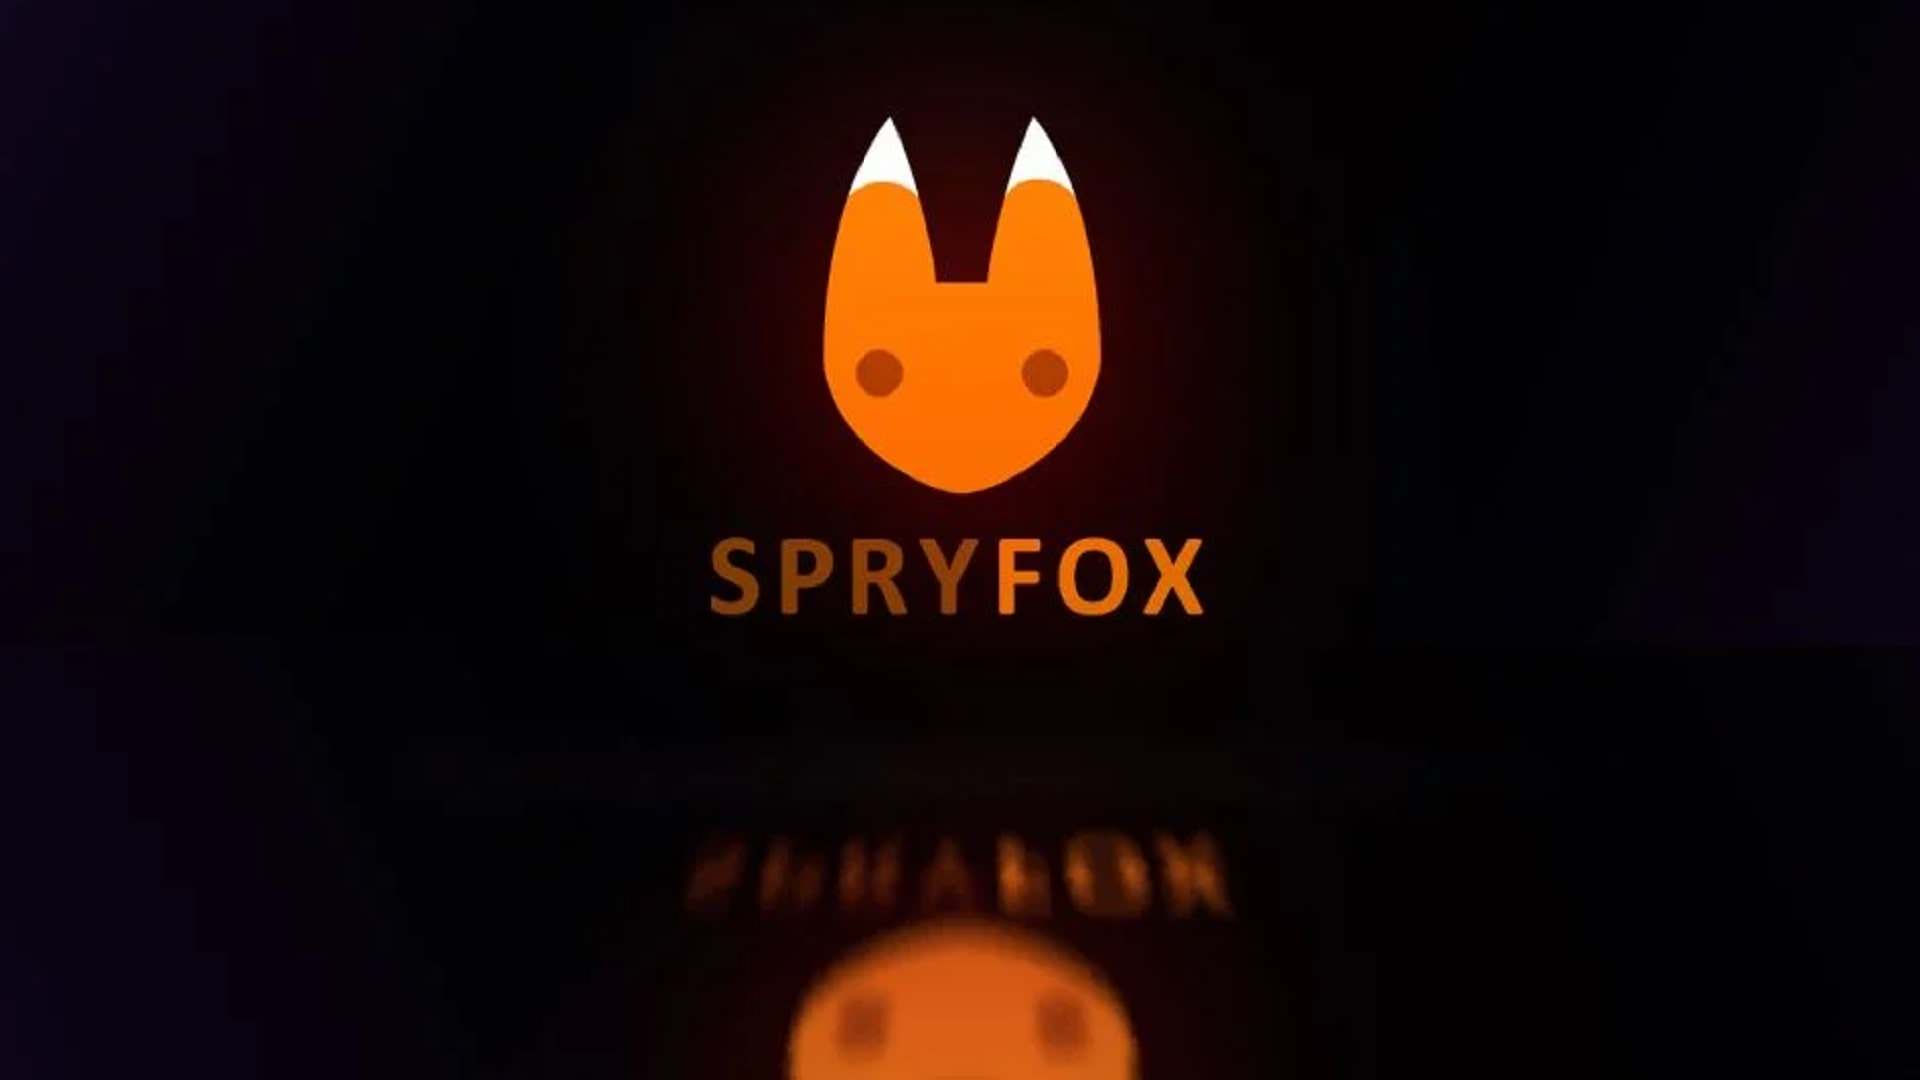 نتفلیکس استودیو Spry Fox را خریداری کرد